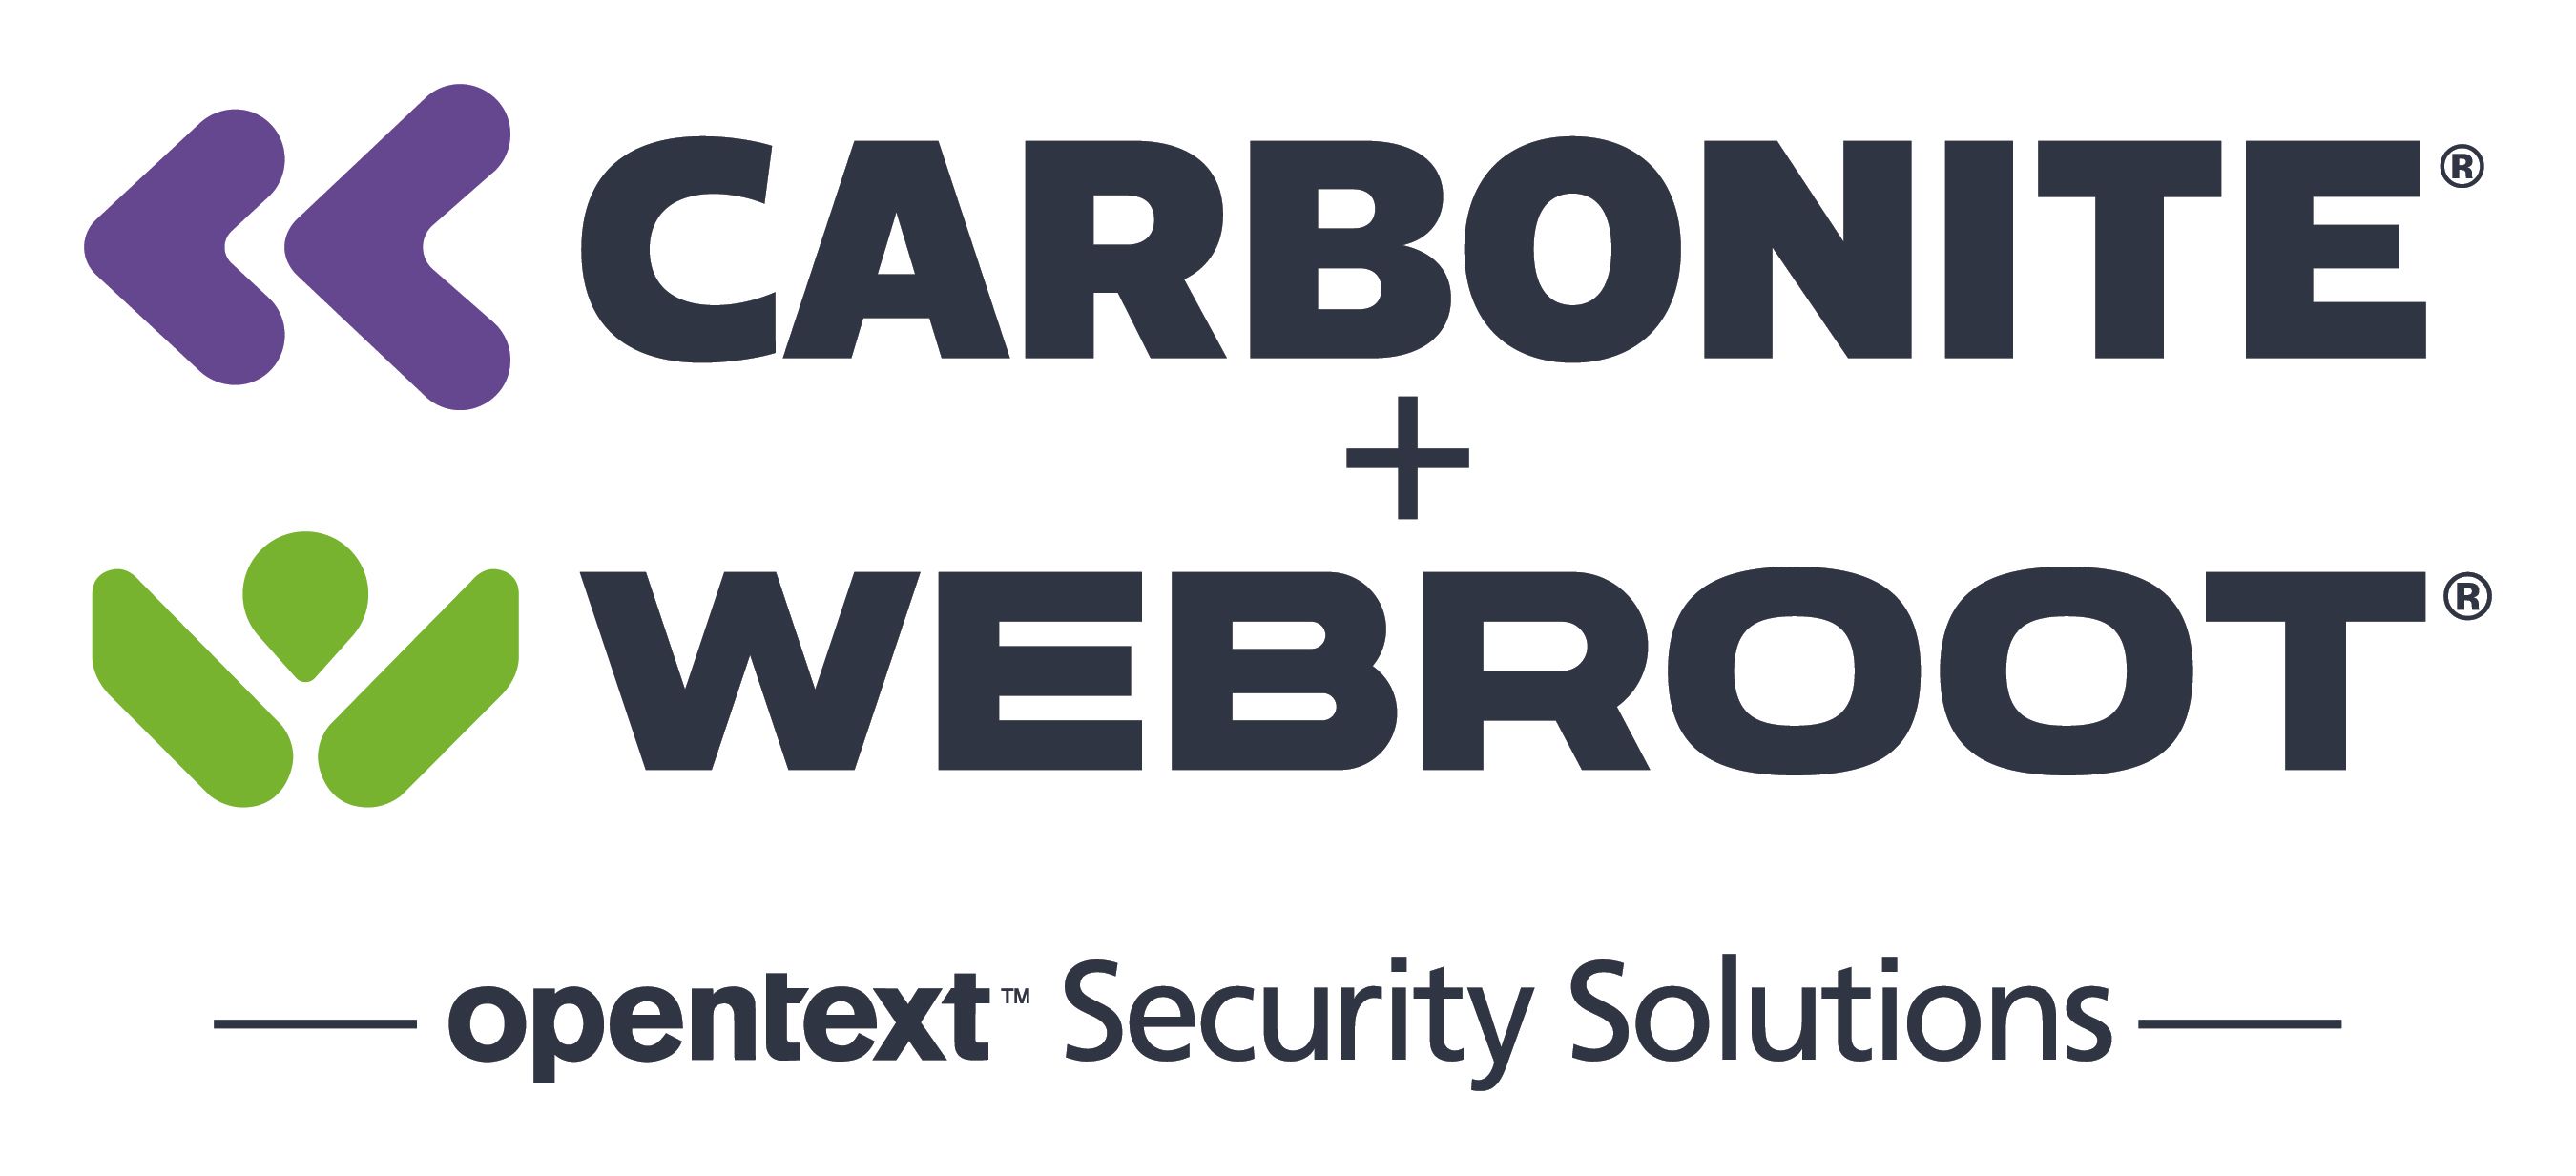 Carbonite + Webroot